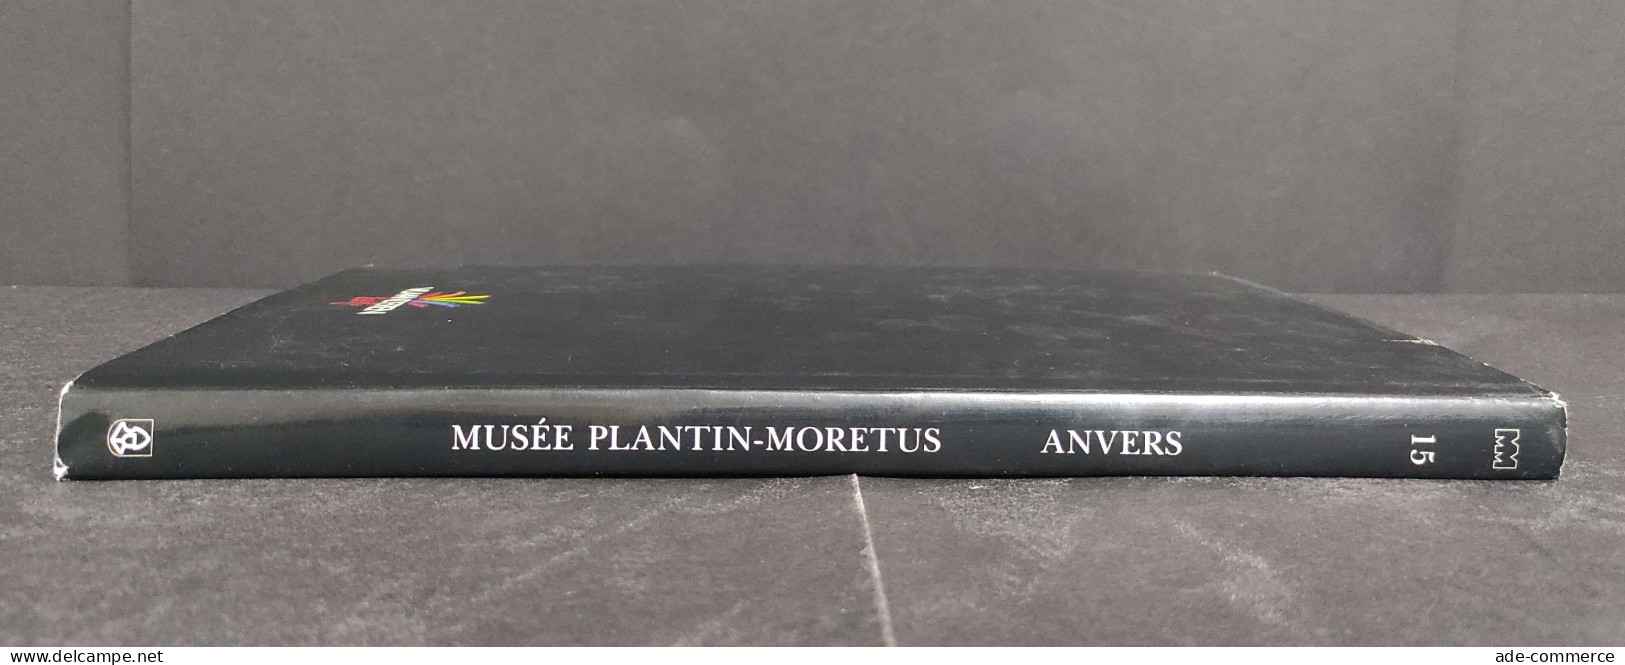 Musee Platin-Moretus - Anvers - F. Nave - L. Voet - 1989 - Arte, Antigüedades